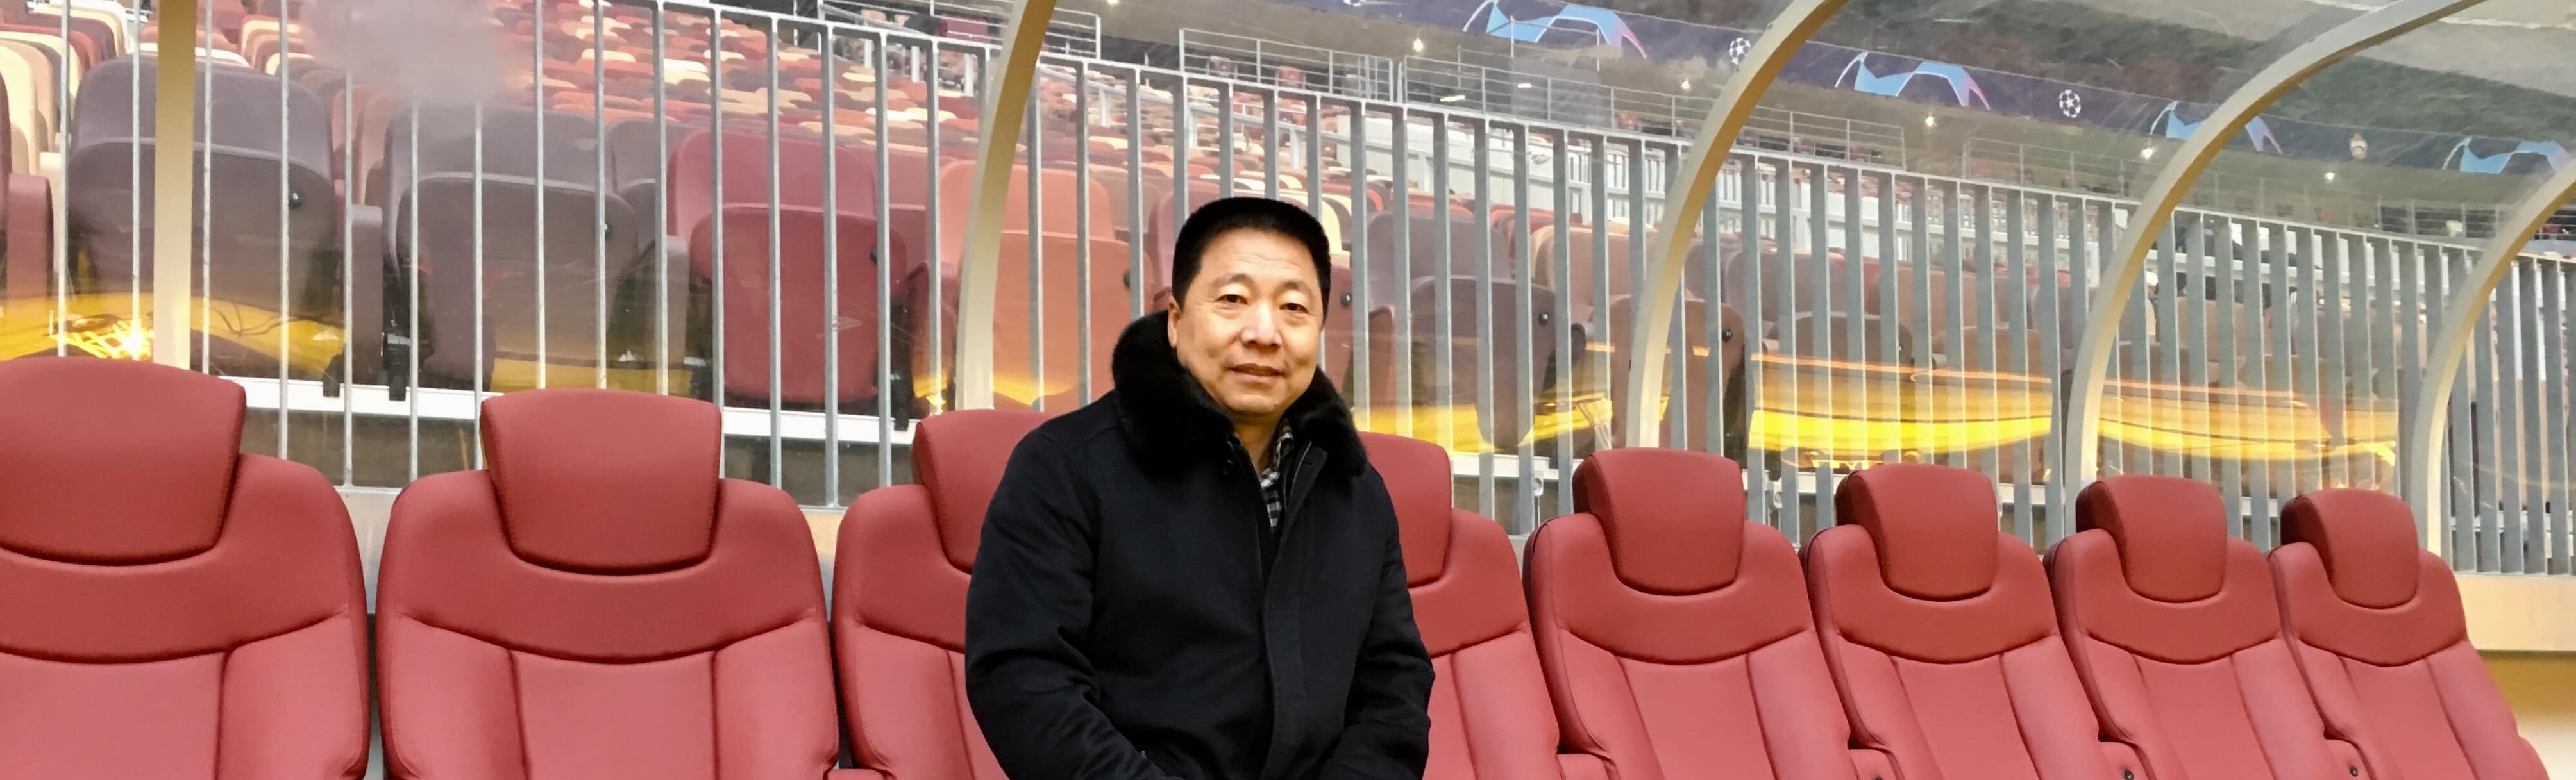 Первый космонавт из КНР посетил Большую спортивную арену «Лужники»